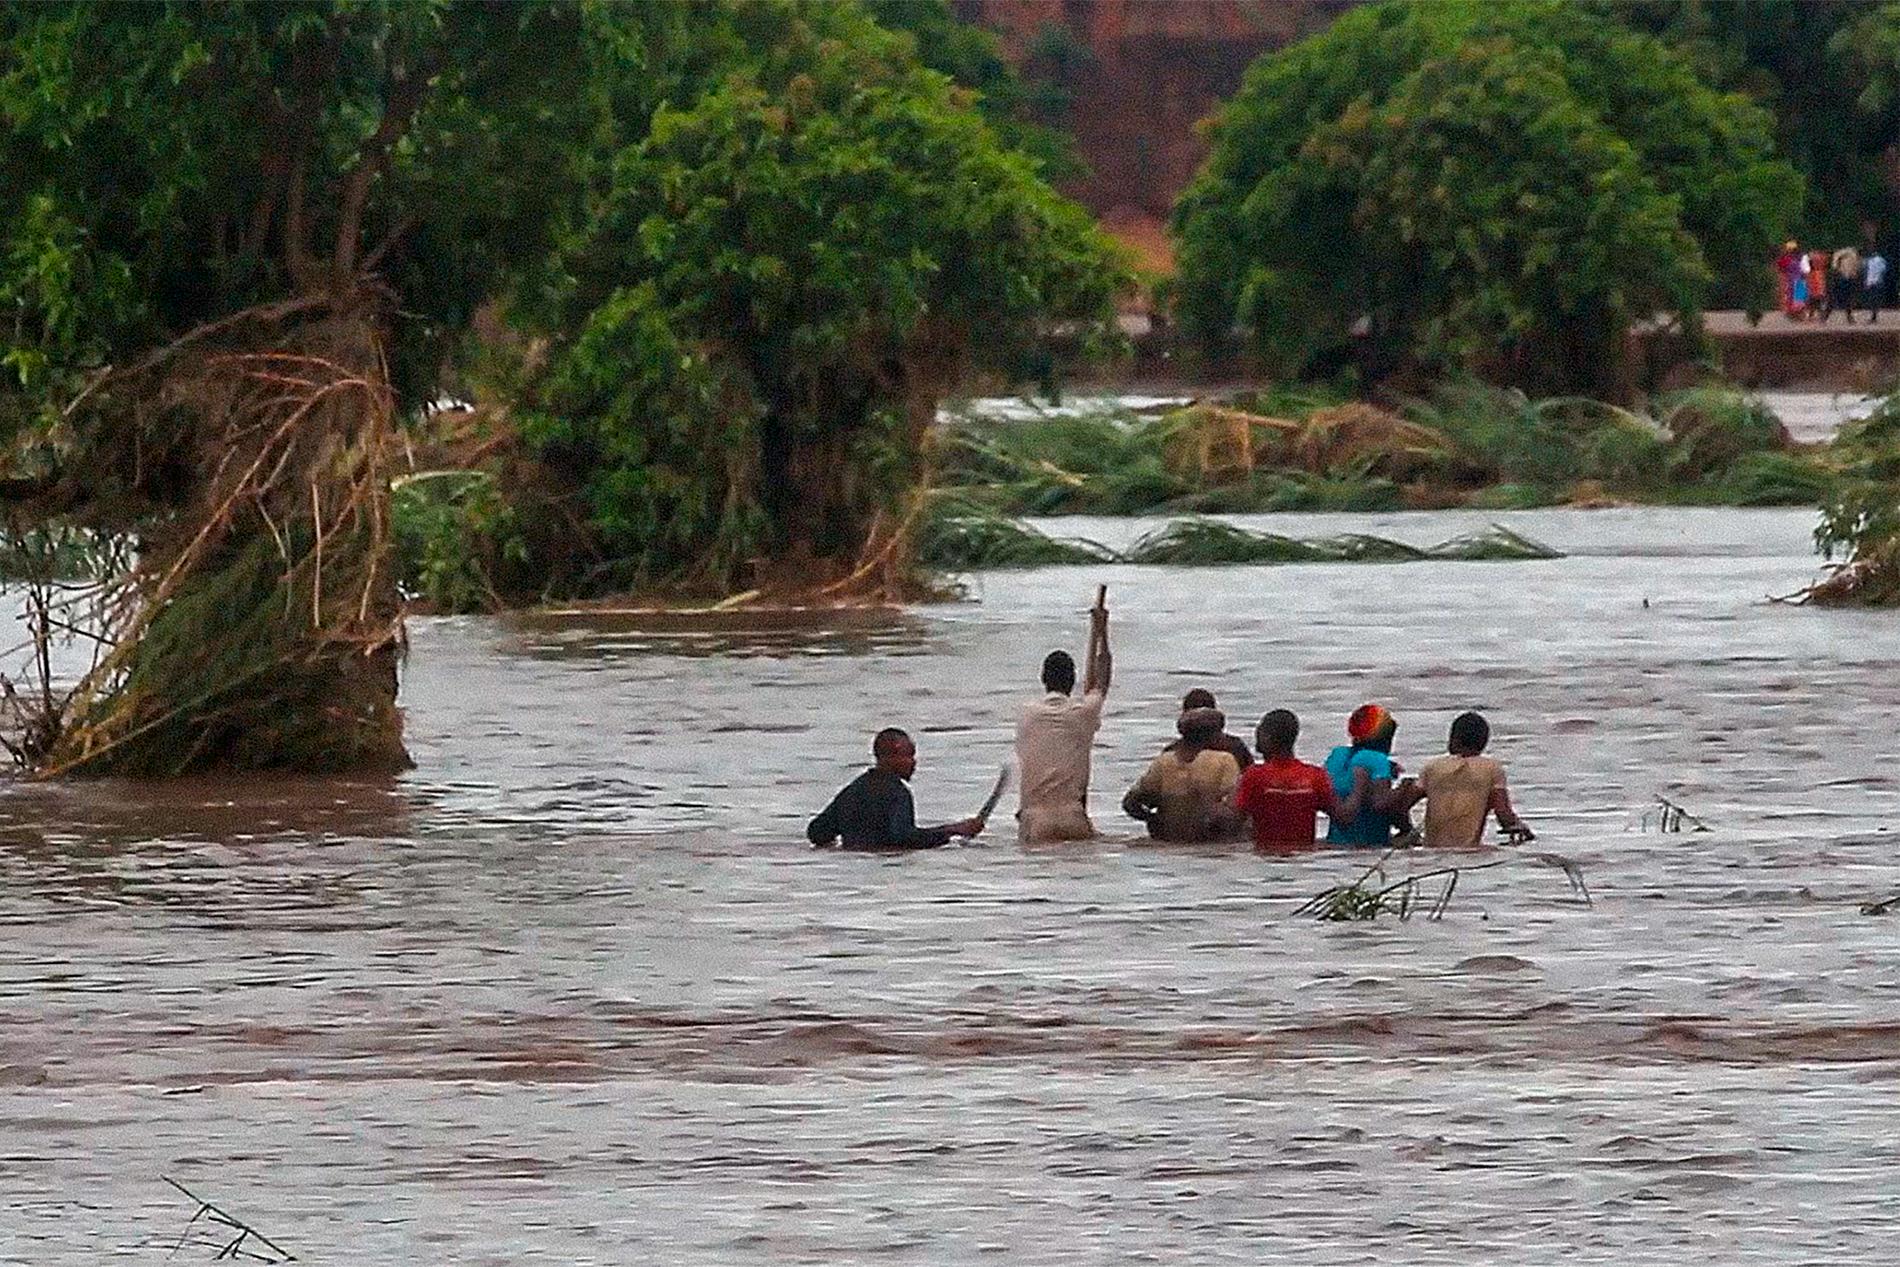 Flera dagar efter att den tropiska stormen Ana dragit förbi befaras ytterligare dödsoffer. Bilden är tagen i Malawi, som har drabbats hårt av ovädret, precis som Moçambique och Madagaskar. Arkivbild.